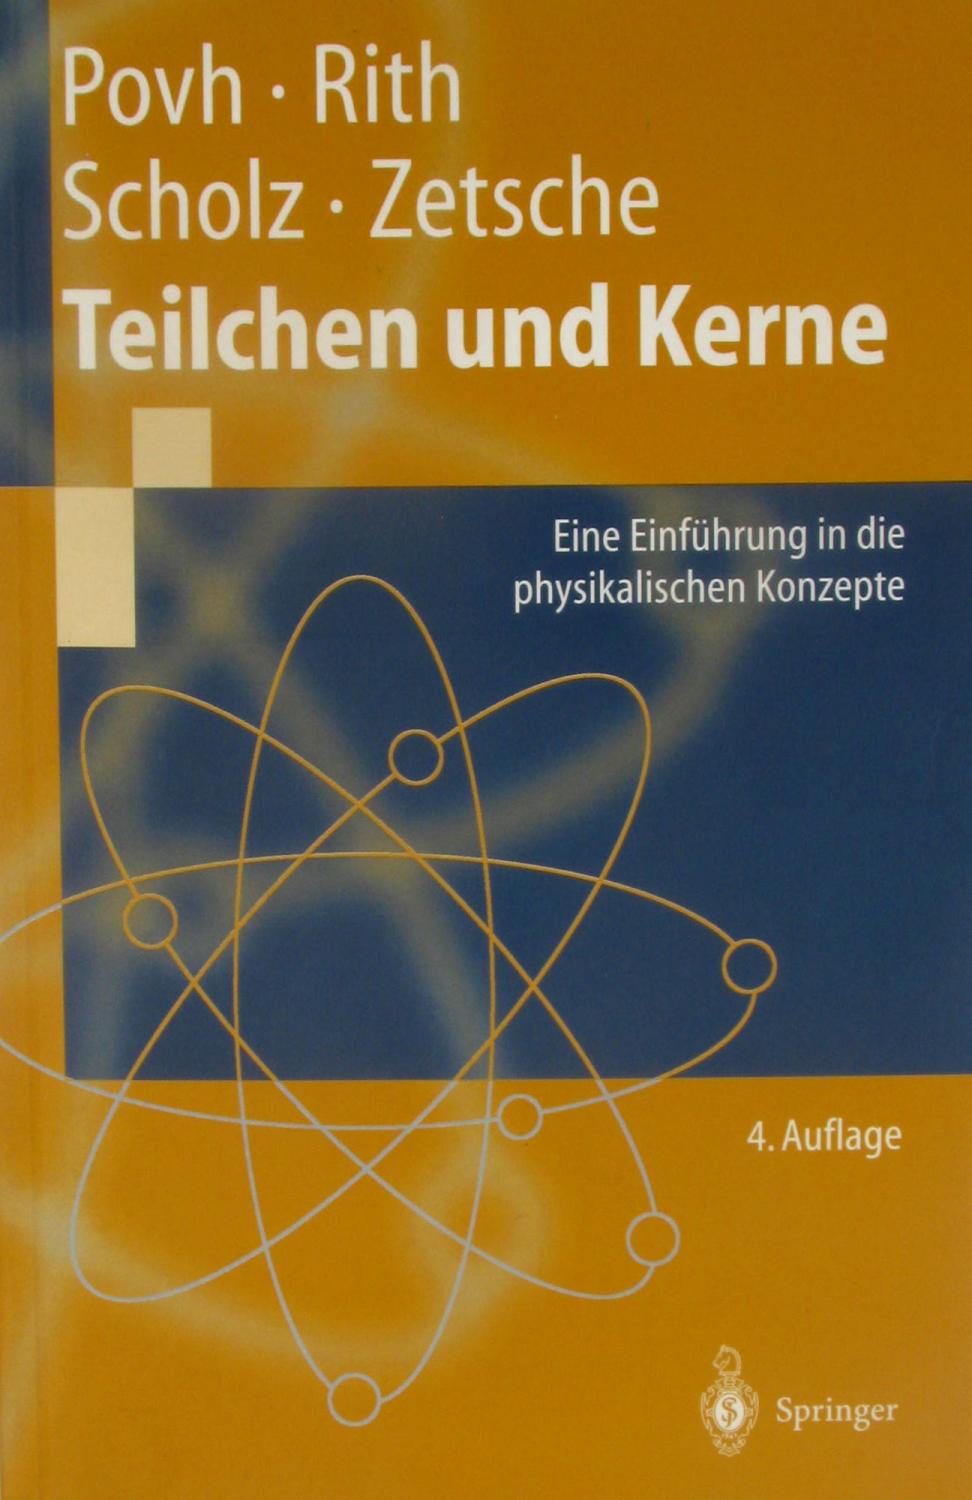 Teilchen und Kerne. Eine Einführung in die physikalischen Konzepte., - Povh, Bogdan, Klaus Rith und Christoph Scholz